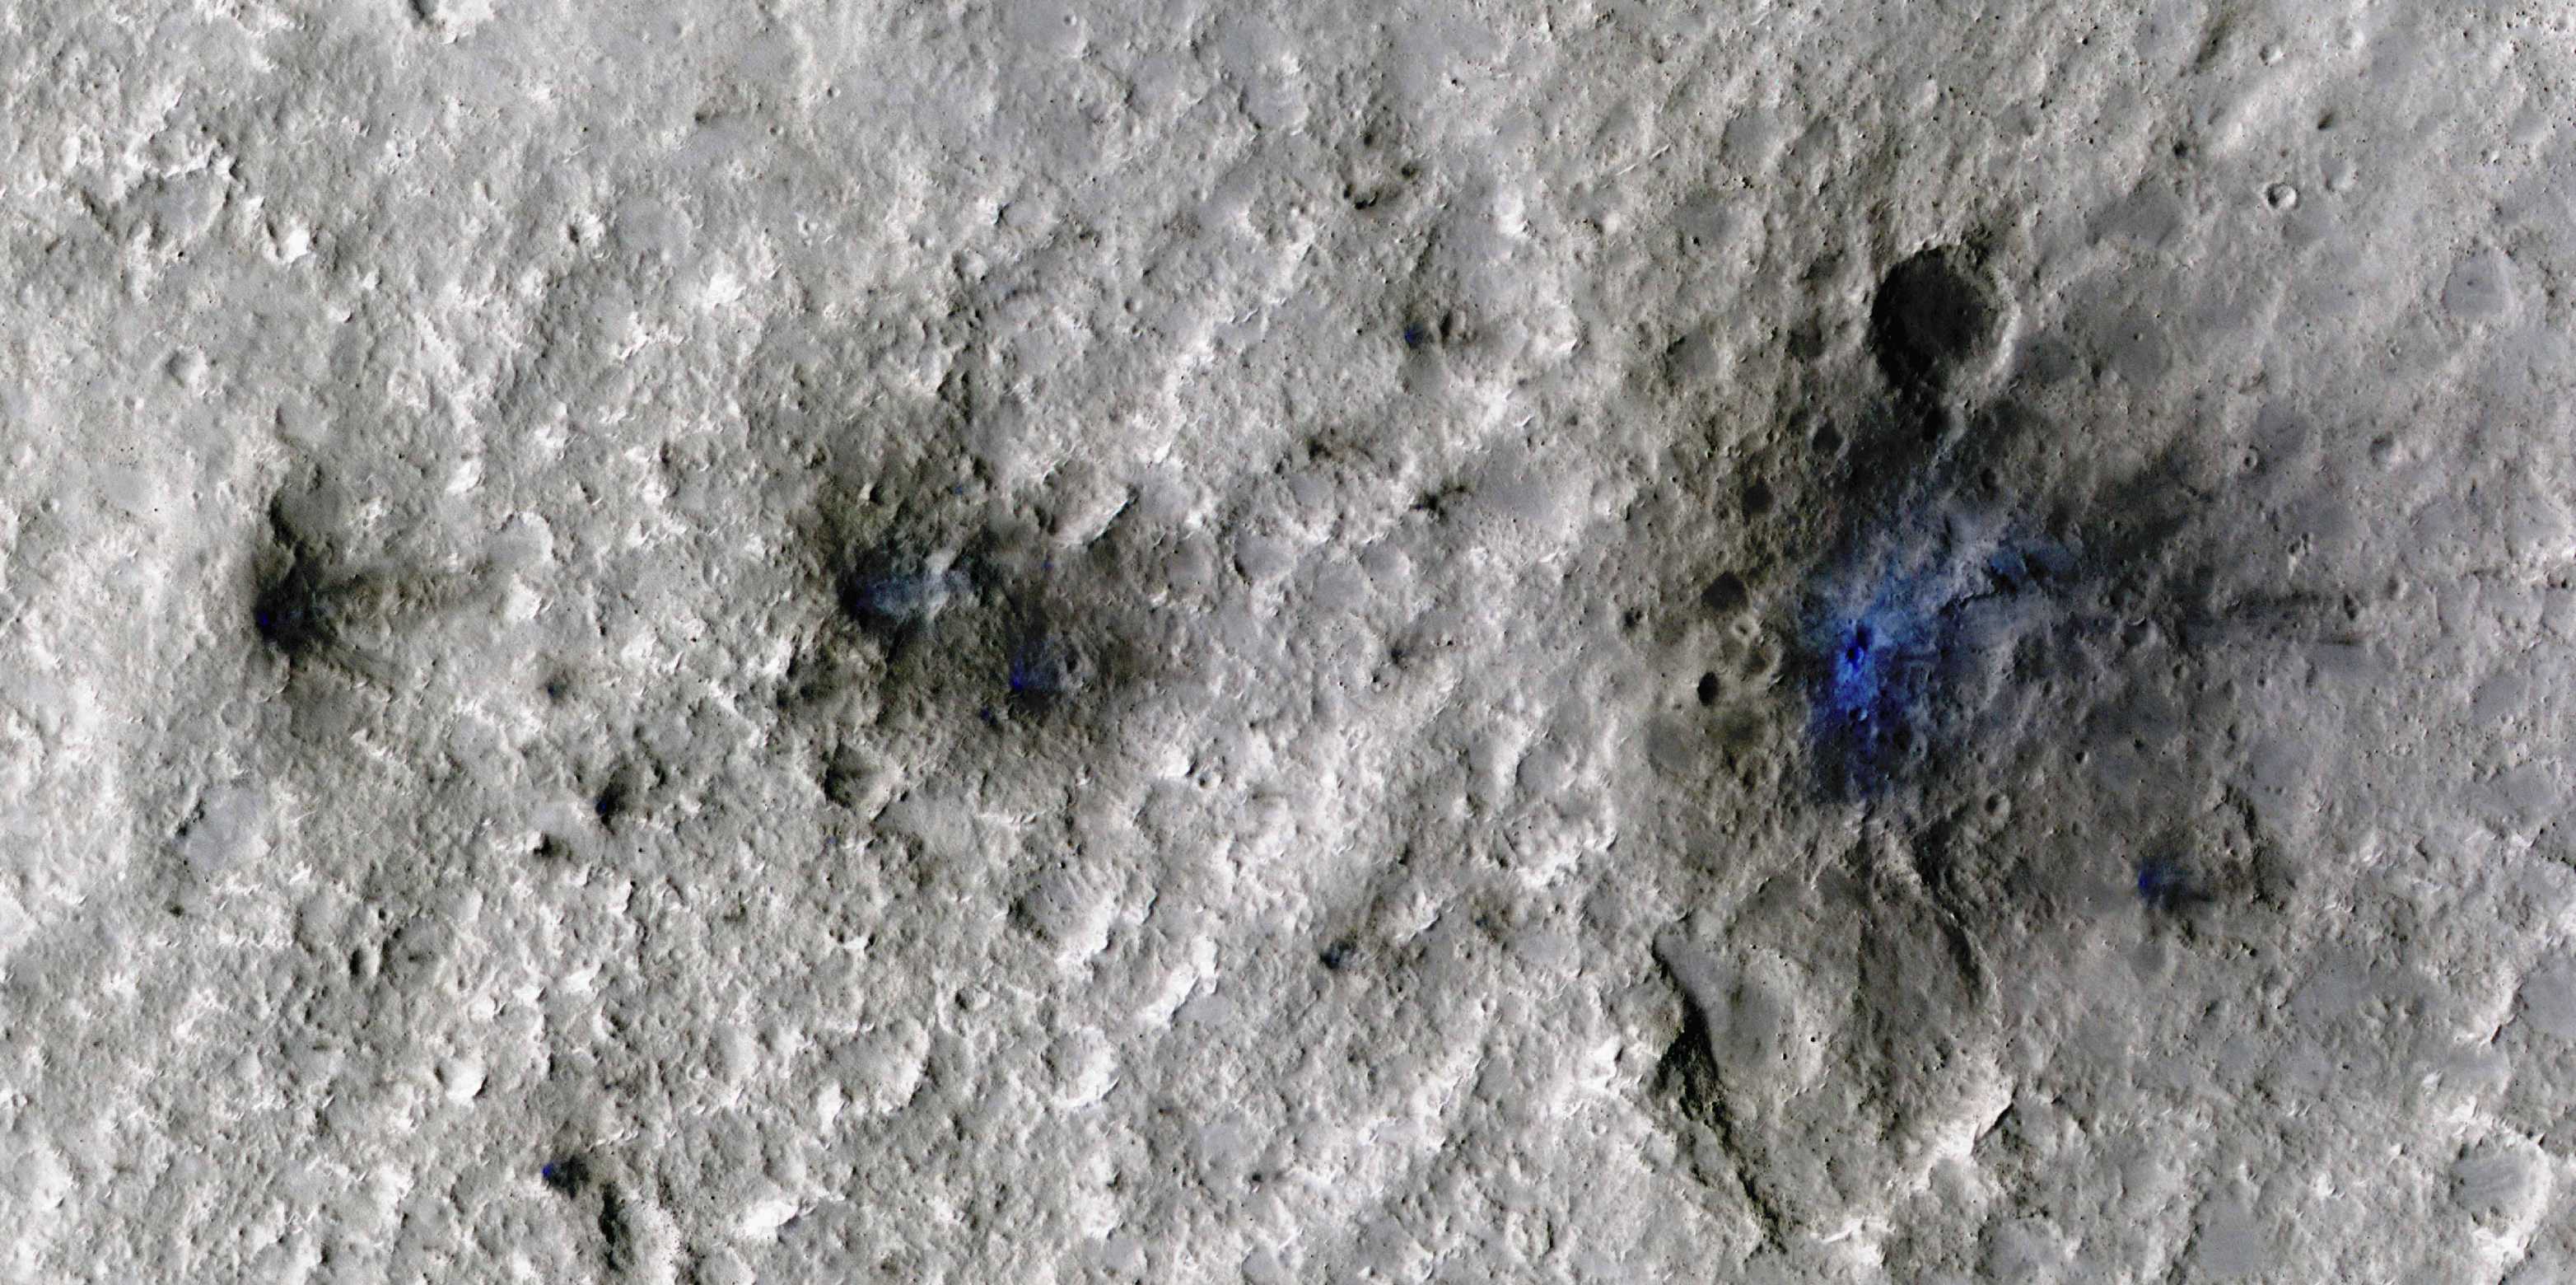 Meteoroid on the Mars